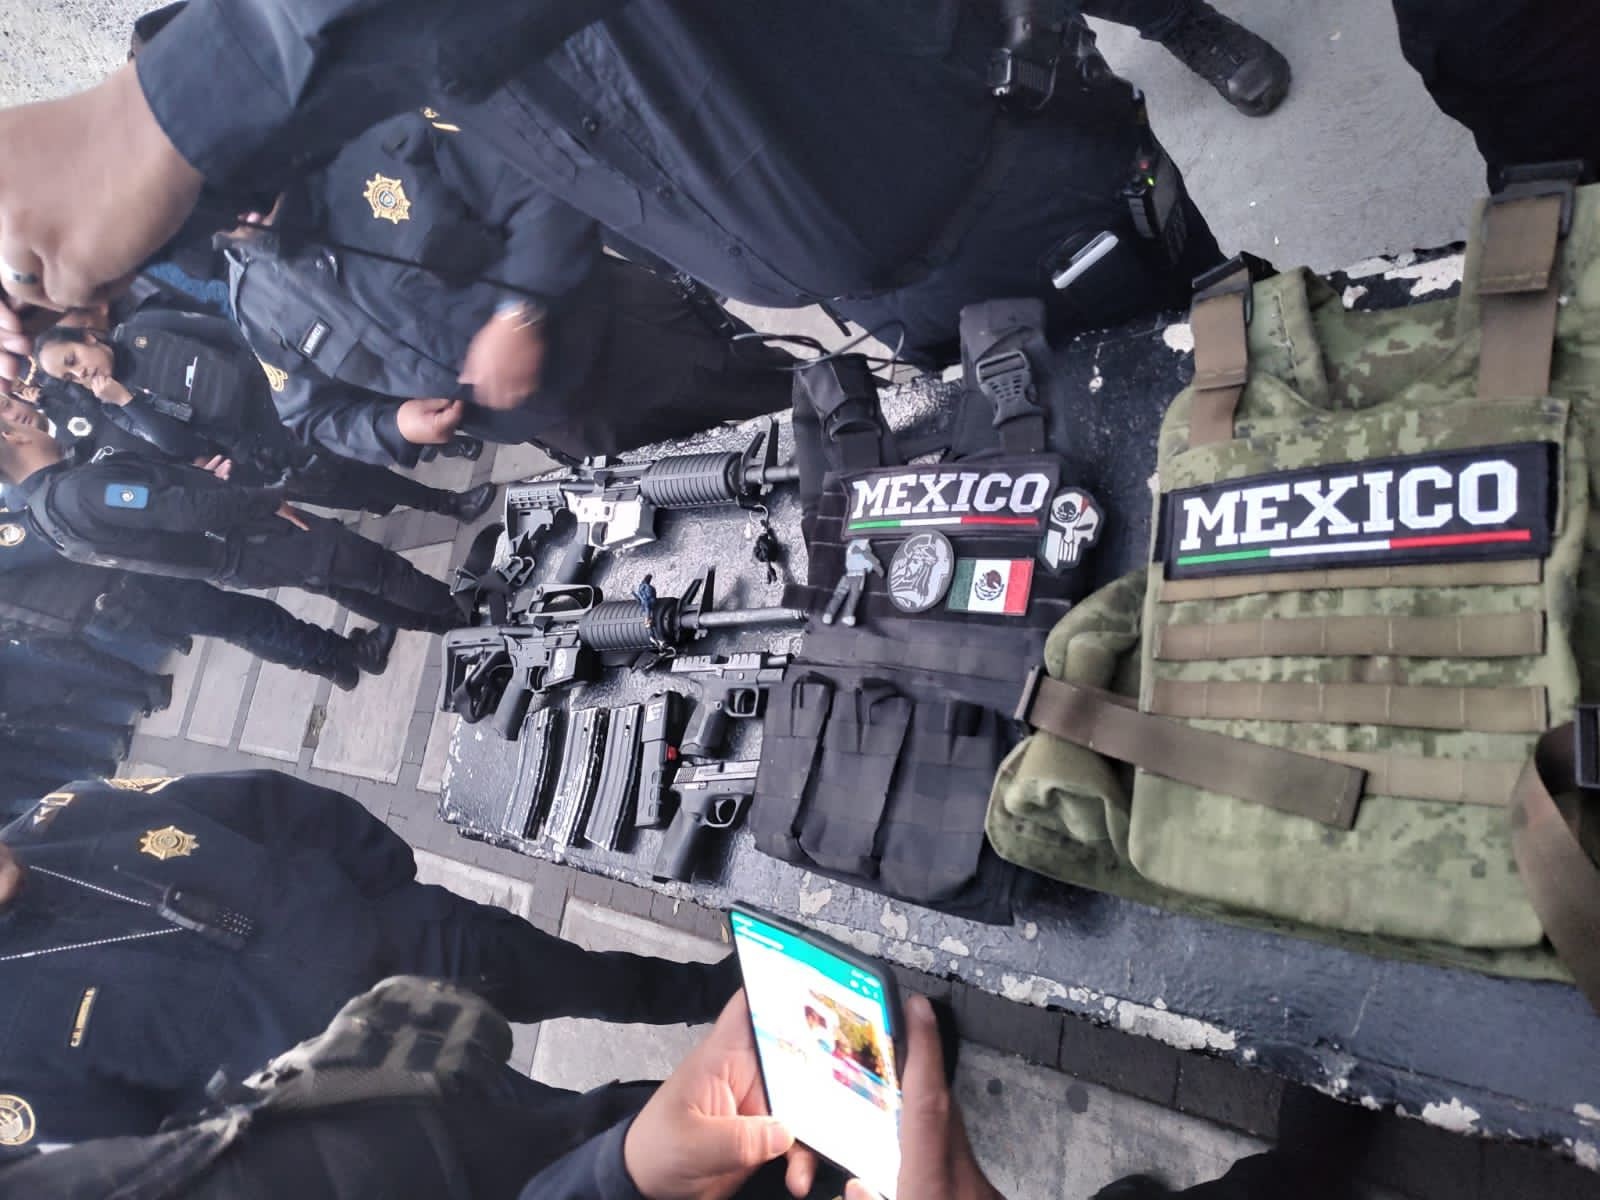 Después de una persecución y enfrentamiento con policías del Estado de México, un grupo de 7 presuntos delincuentes huyó hacia la Ciudad de México, en donde elementos de la corporación "Blindar ÁO" los detuvieron, en coordinación con la Secretaría de Seguridad Ciudadana.